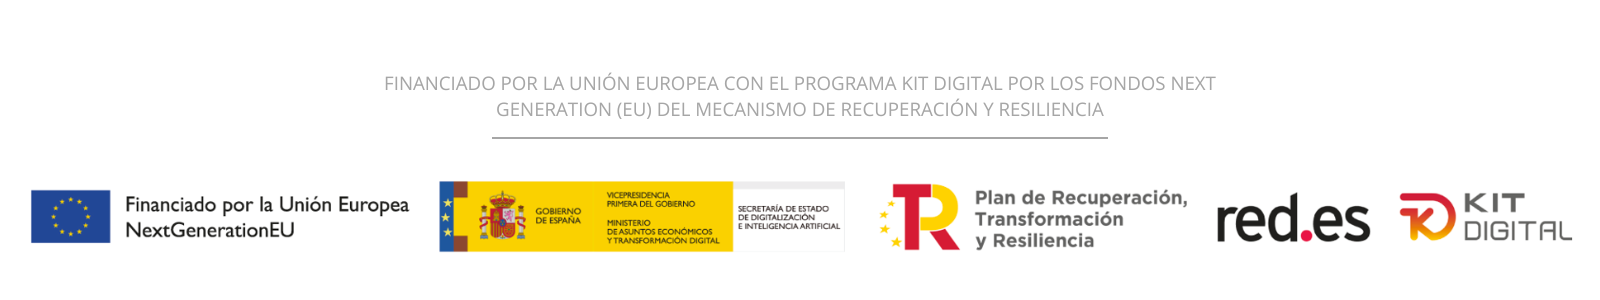 Logotipo Kit Digital, Financiado por la Unión Europea, Gobierno de España, red.es y Plan de Recuperación, Transformación y Resiliencia